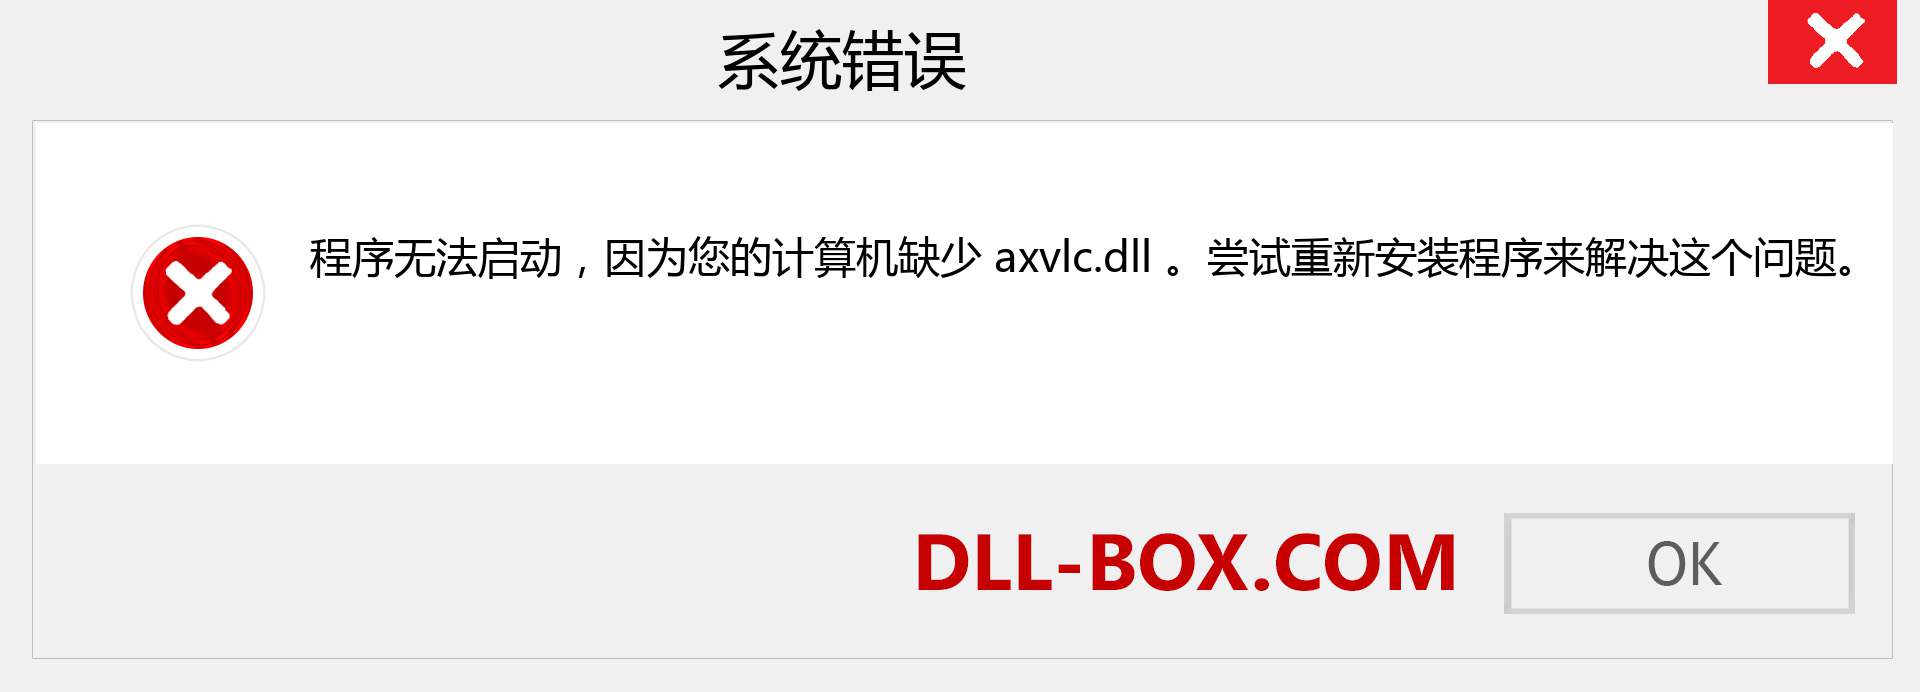 axvlc.dll 文件丢失？。 适用于 Windows 7、8、10 的下载 - 修复 Windows、照片、图像上的 axvlc dll 丢失错误